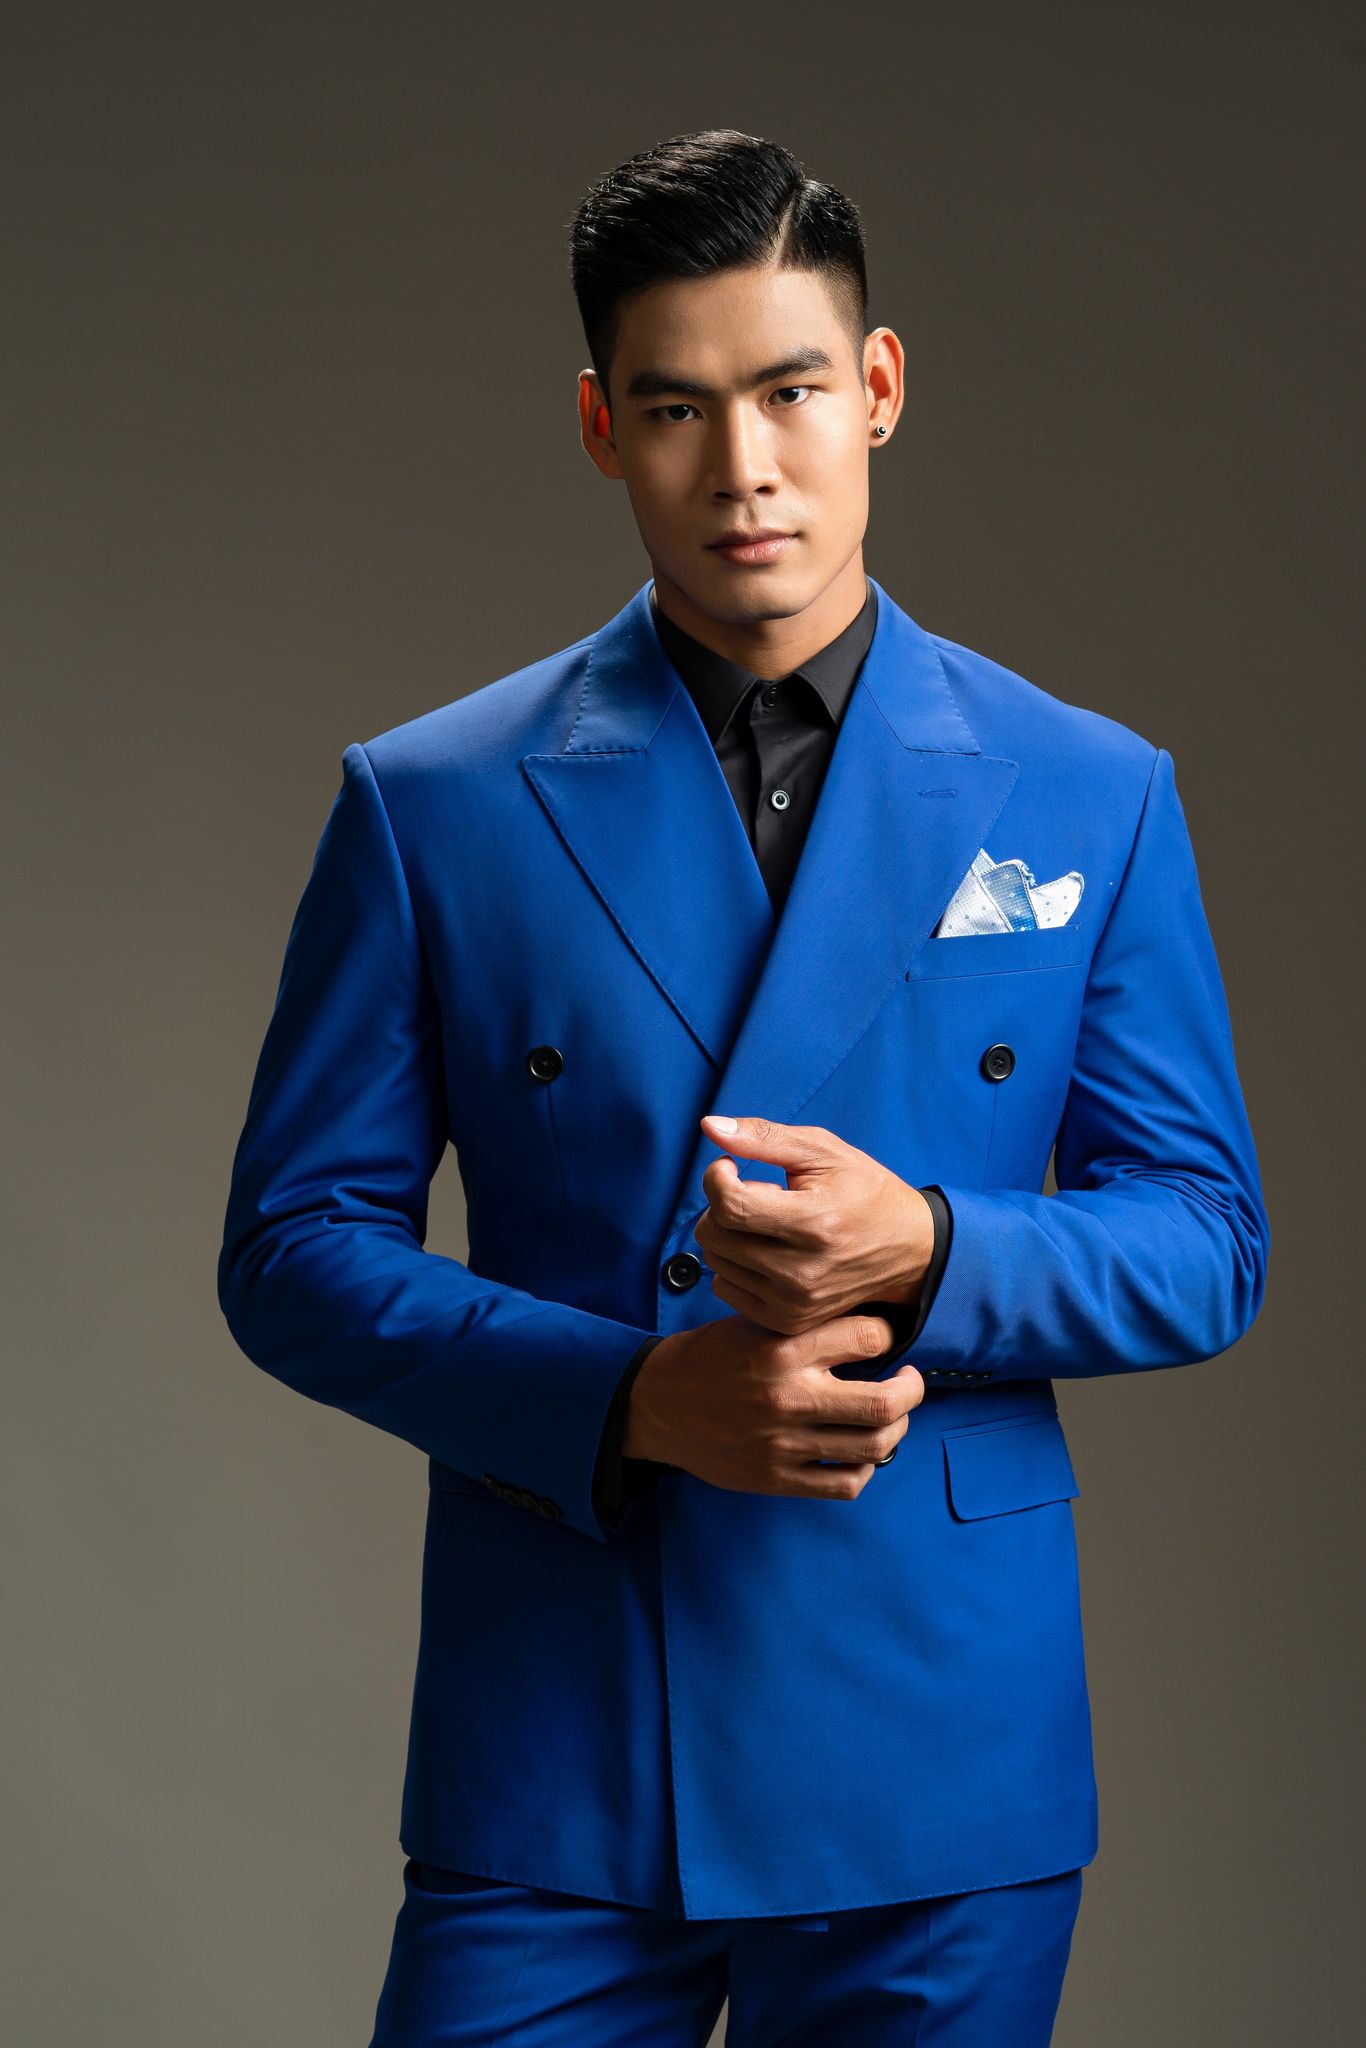 Đại diện Mister Global Việt Nam Danh Chiếu Linh tung ảnh lịch lãm với vest  - Ảnh 5.